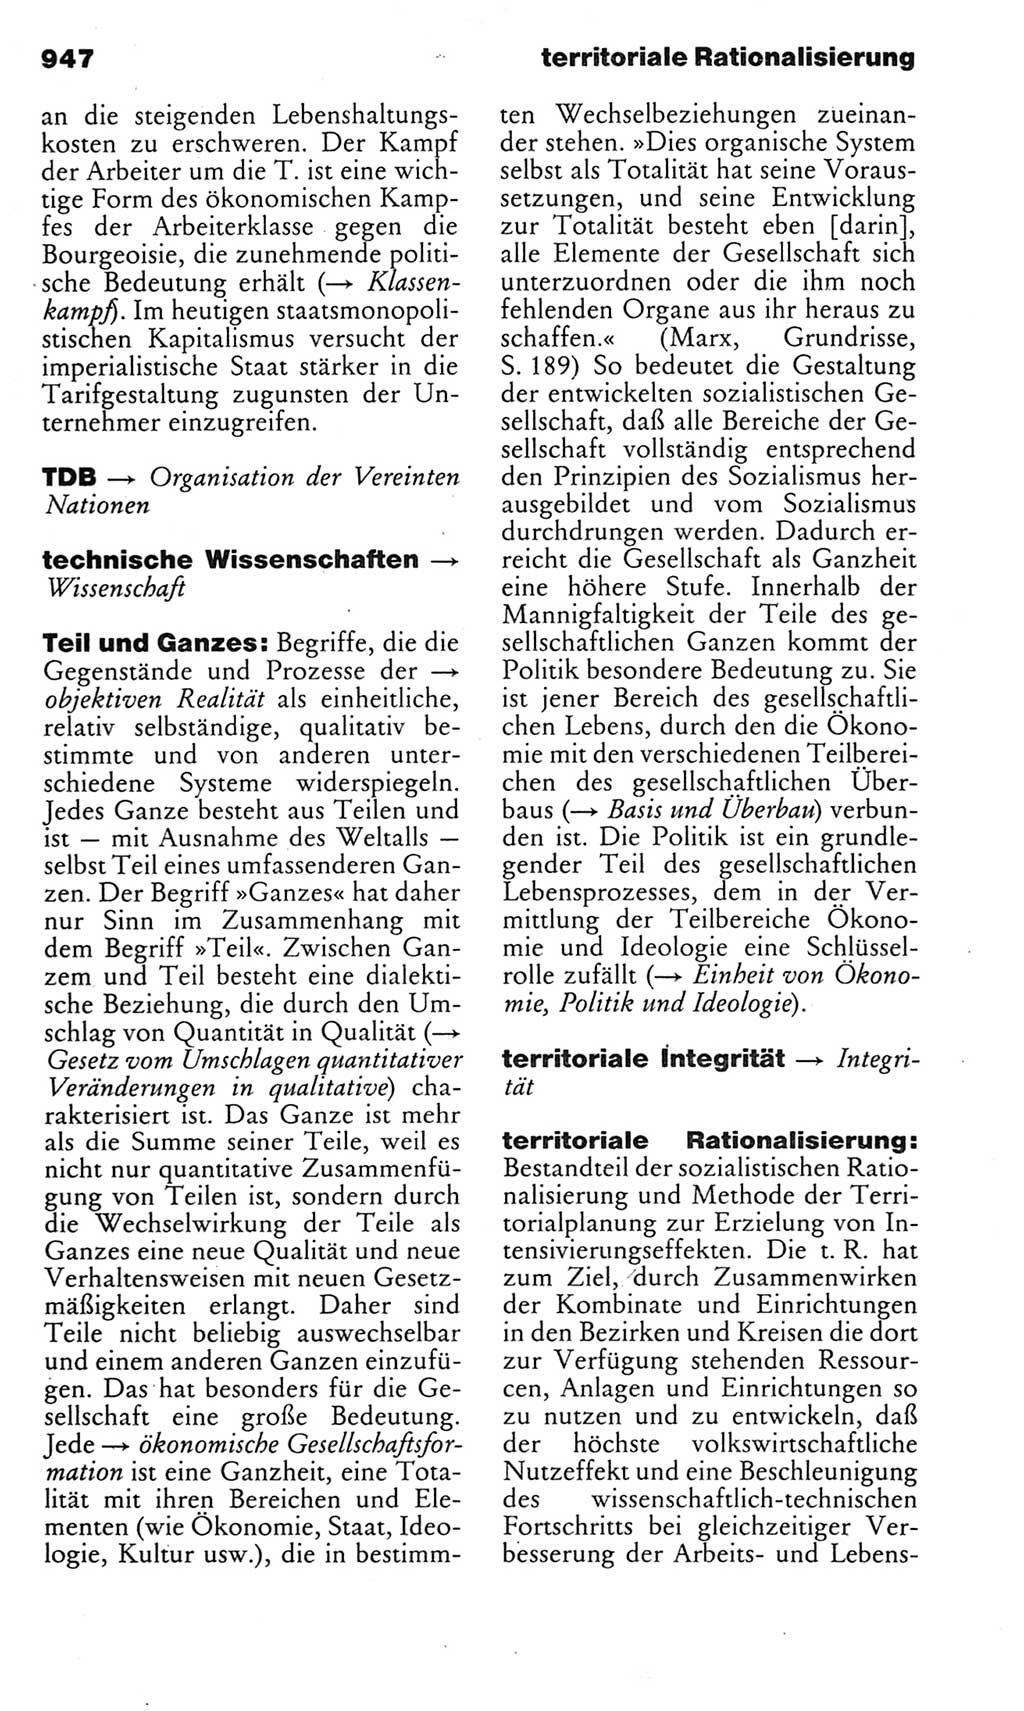 Kleines politisches Wörterbuch [Deutsche Demokratische Republik (DDR)] 1983, Seite 947 (Kl. pol. Wb. DDR 1983, S. 947)